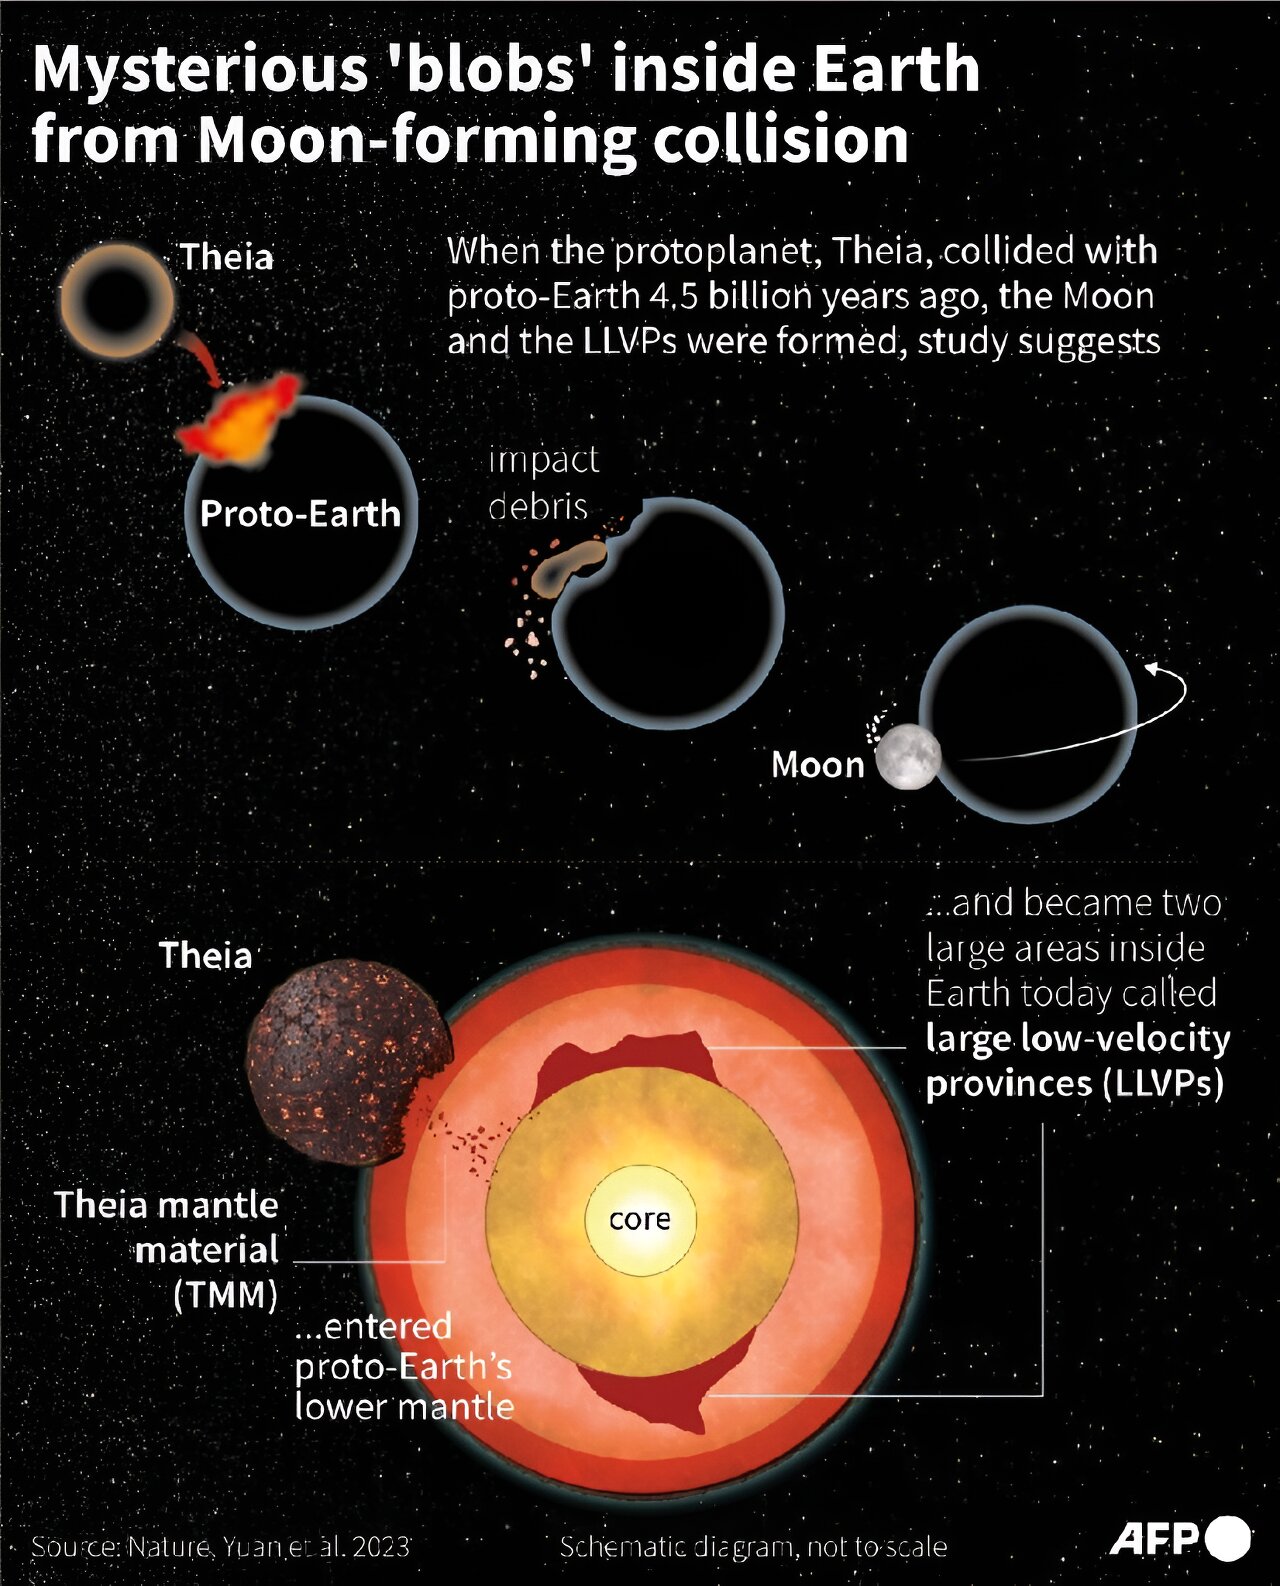 Tajemnicze "plamy" wewnątrz Ziemi mogły powstać po kolizji z Księżycem. Źródło: NOAA SWPC